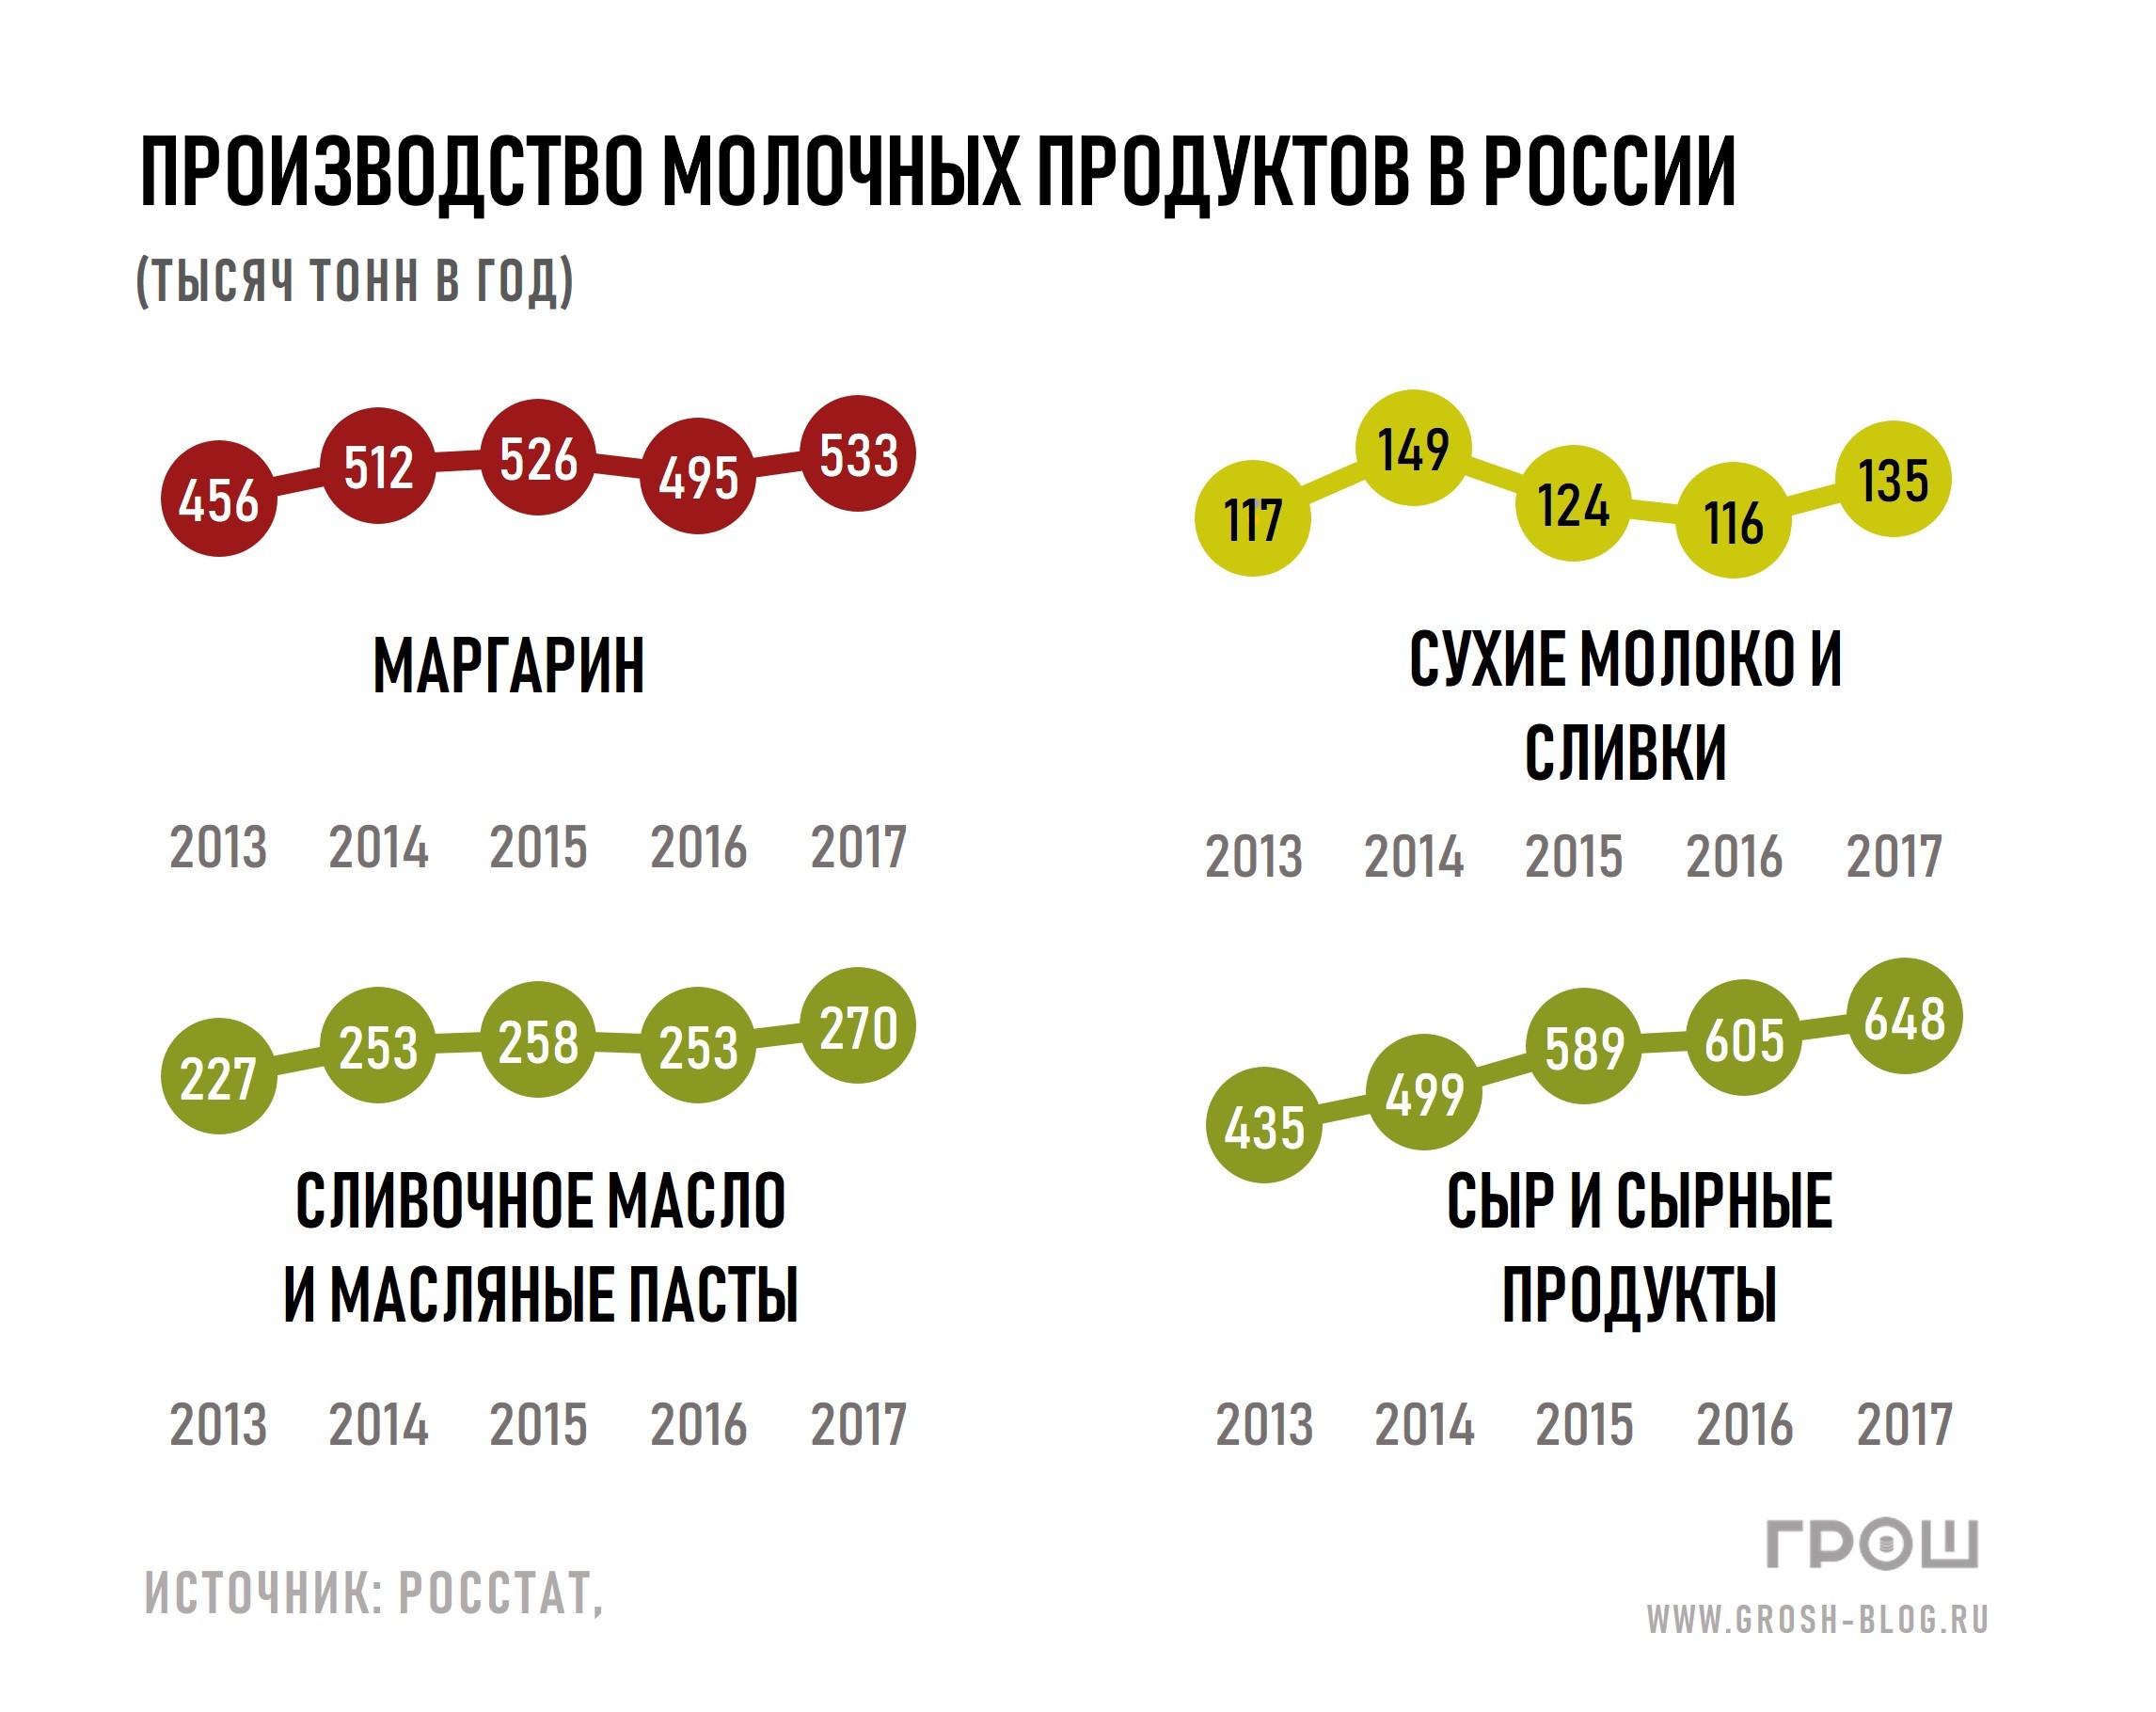 Статистика производства молочных продуктов в России по годам